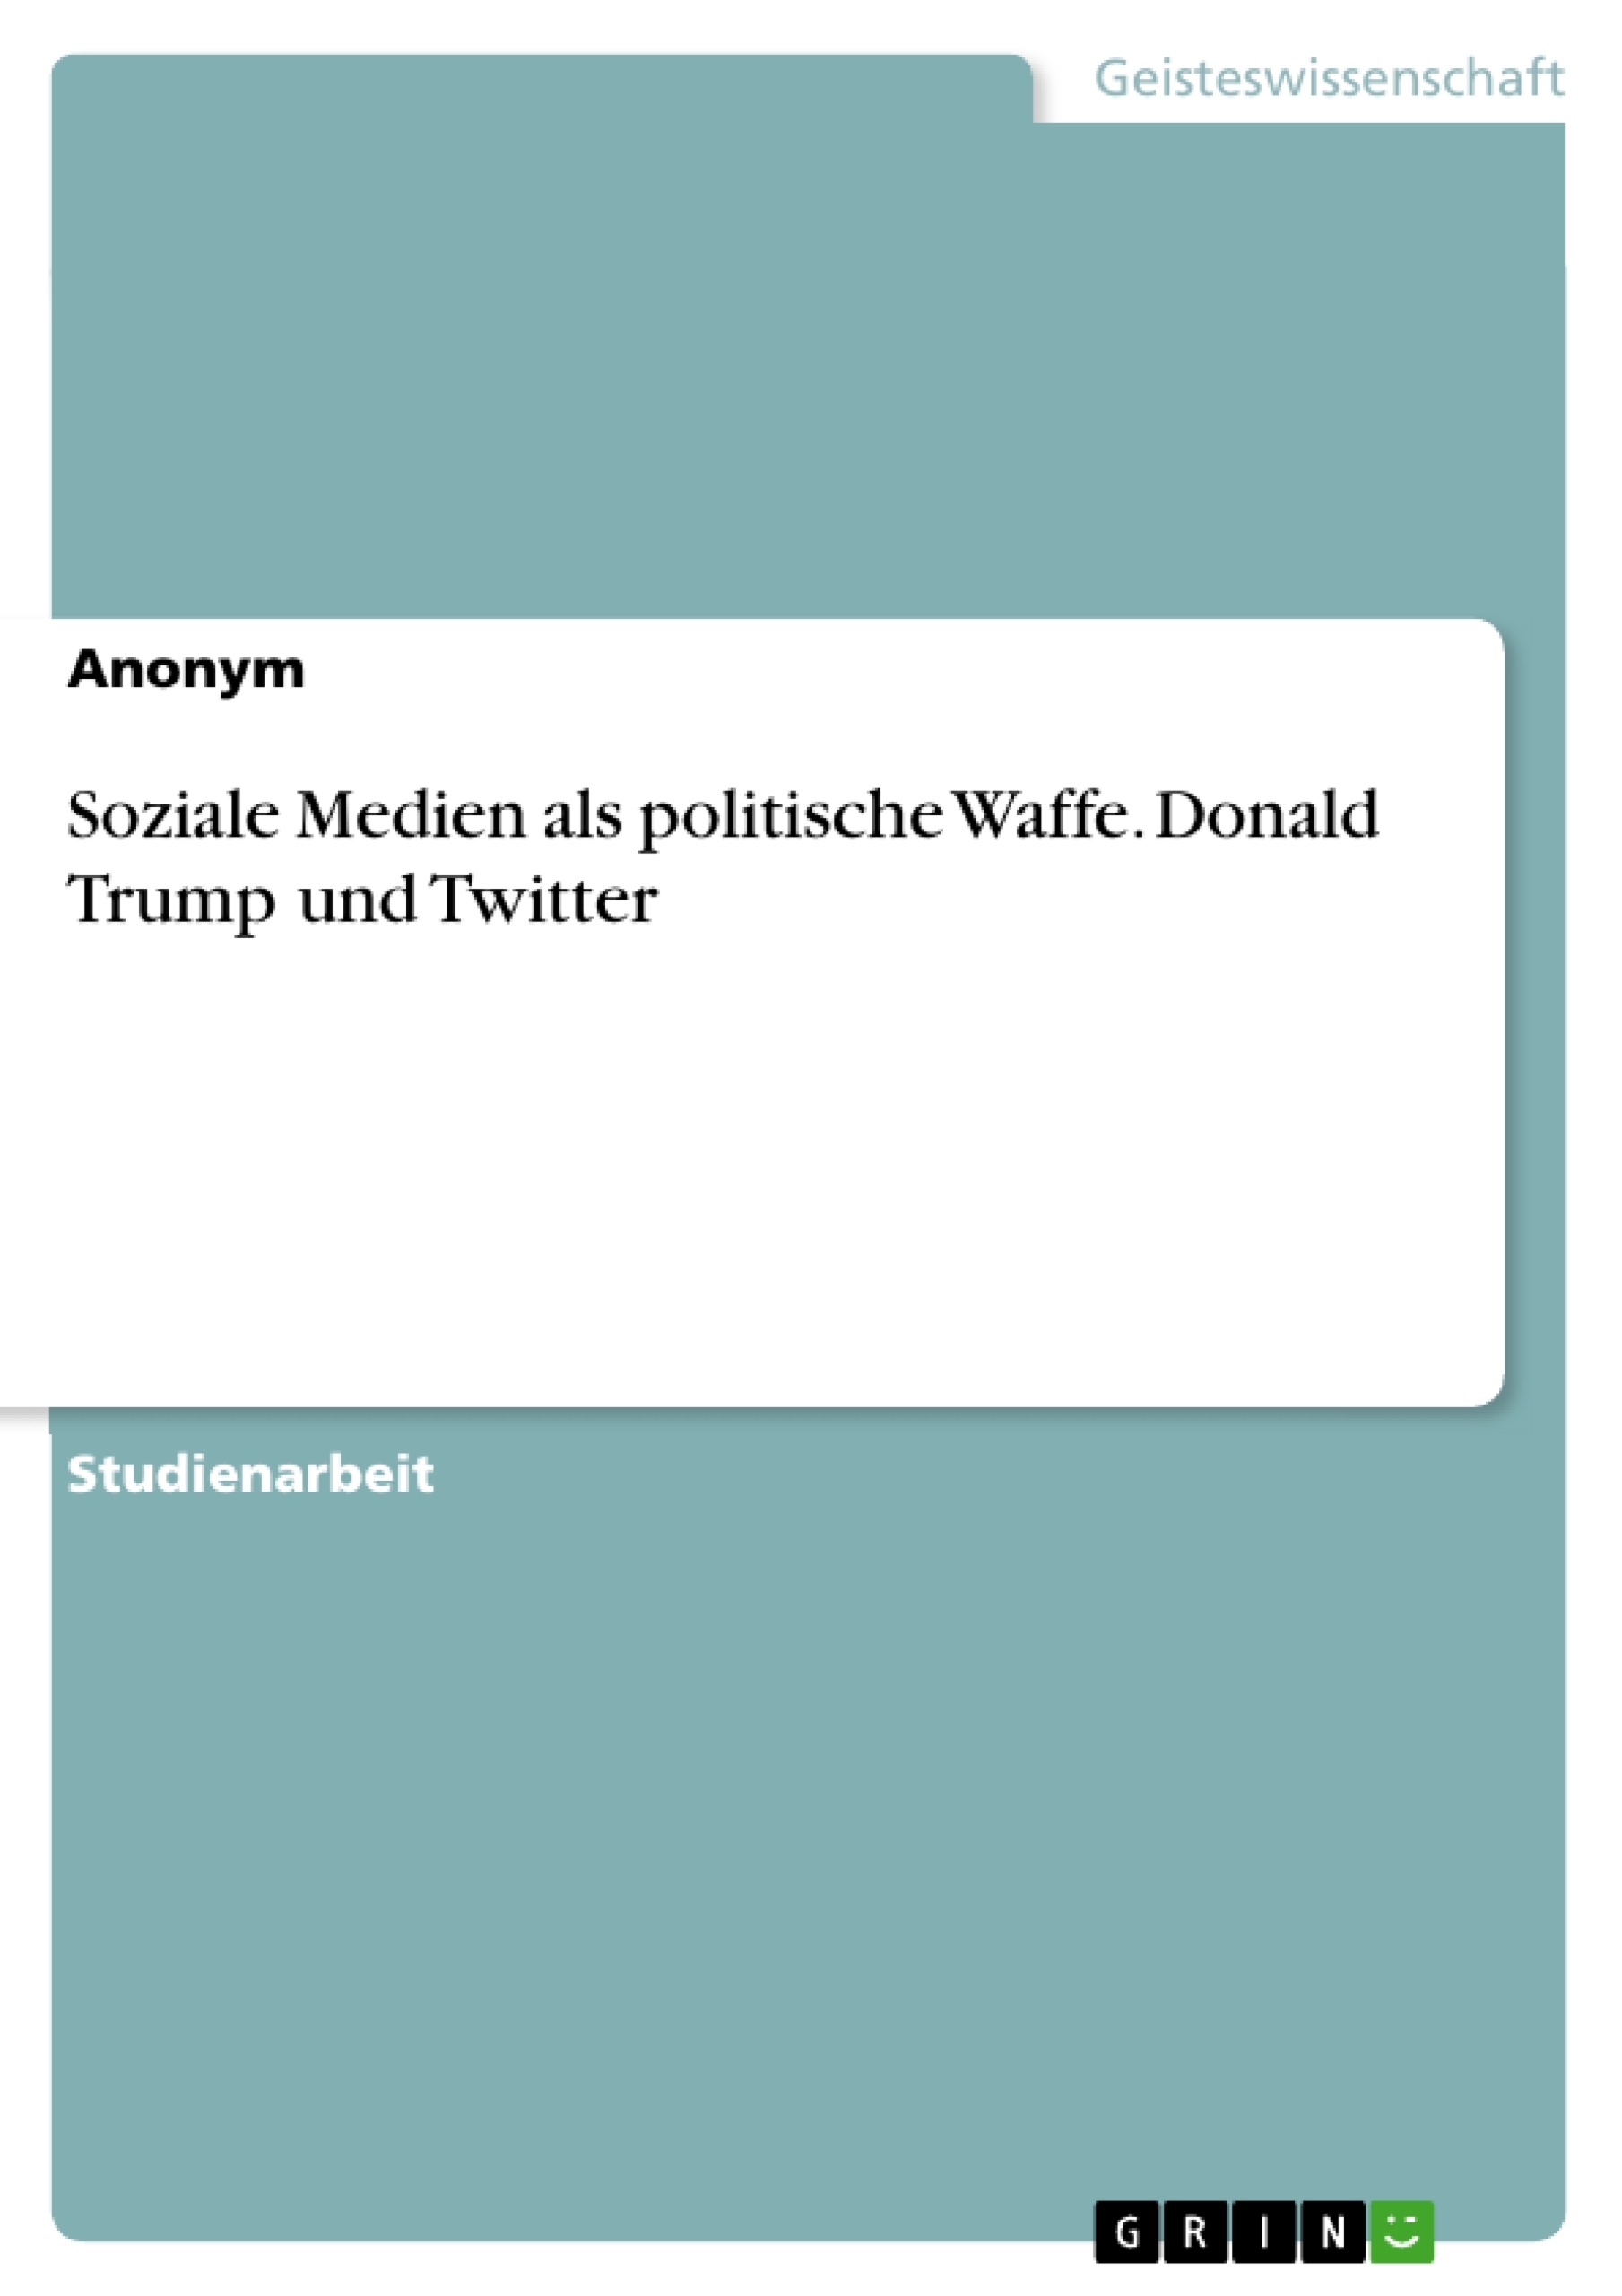 Título: Soziale Medien als politische Waffe. Donald Trump und Twitter